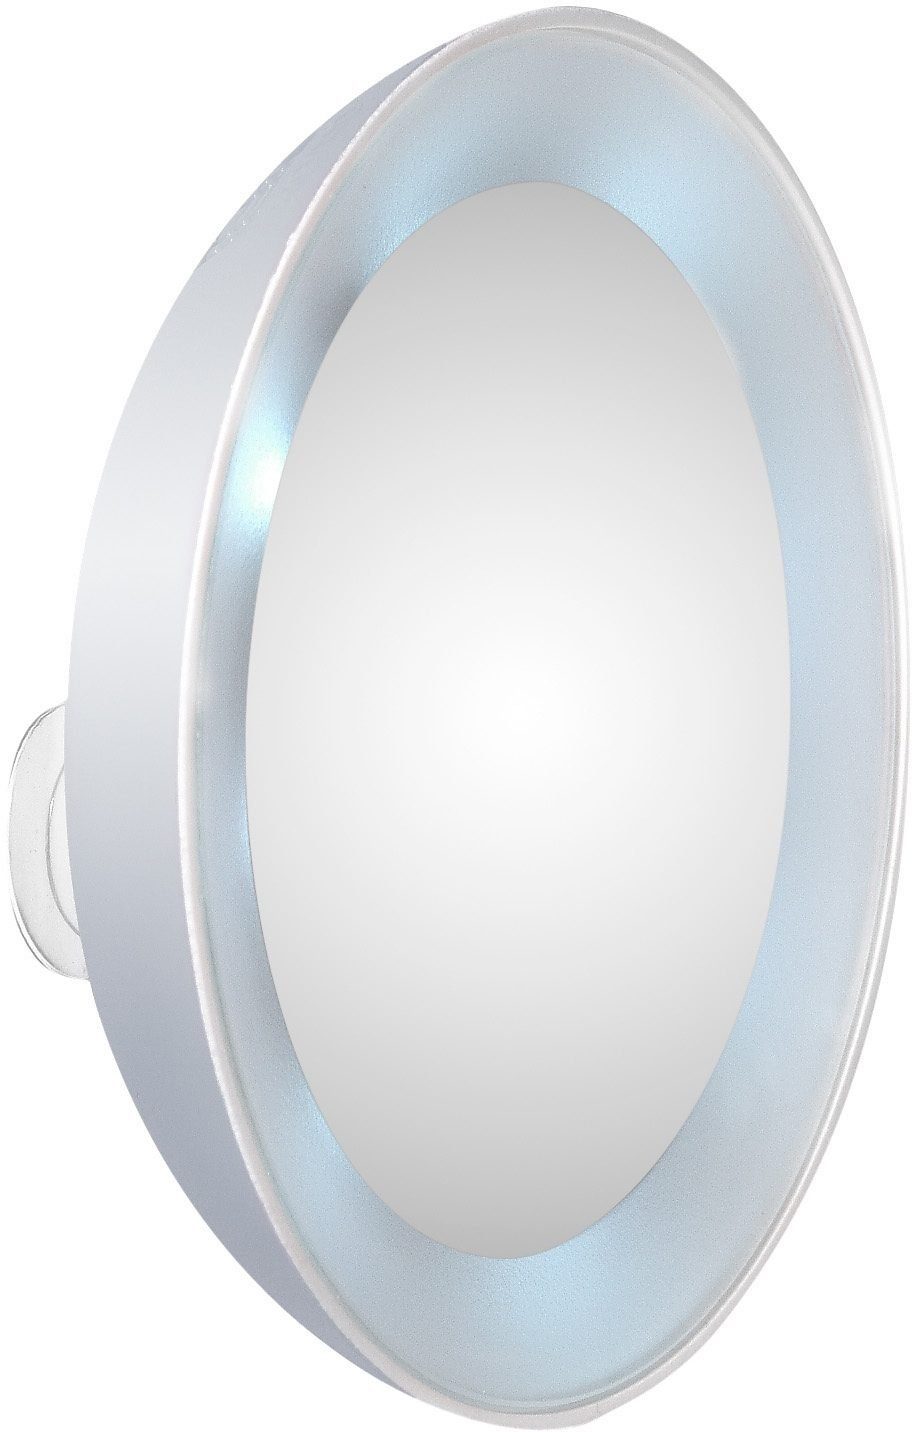 TWEEZERMAN Kosmetikspiegel, 15-fach Schminkspiegel Vergrößerung mit LED-Beleuchtung